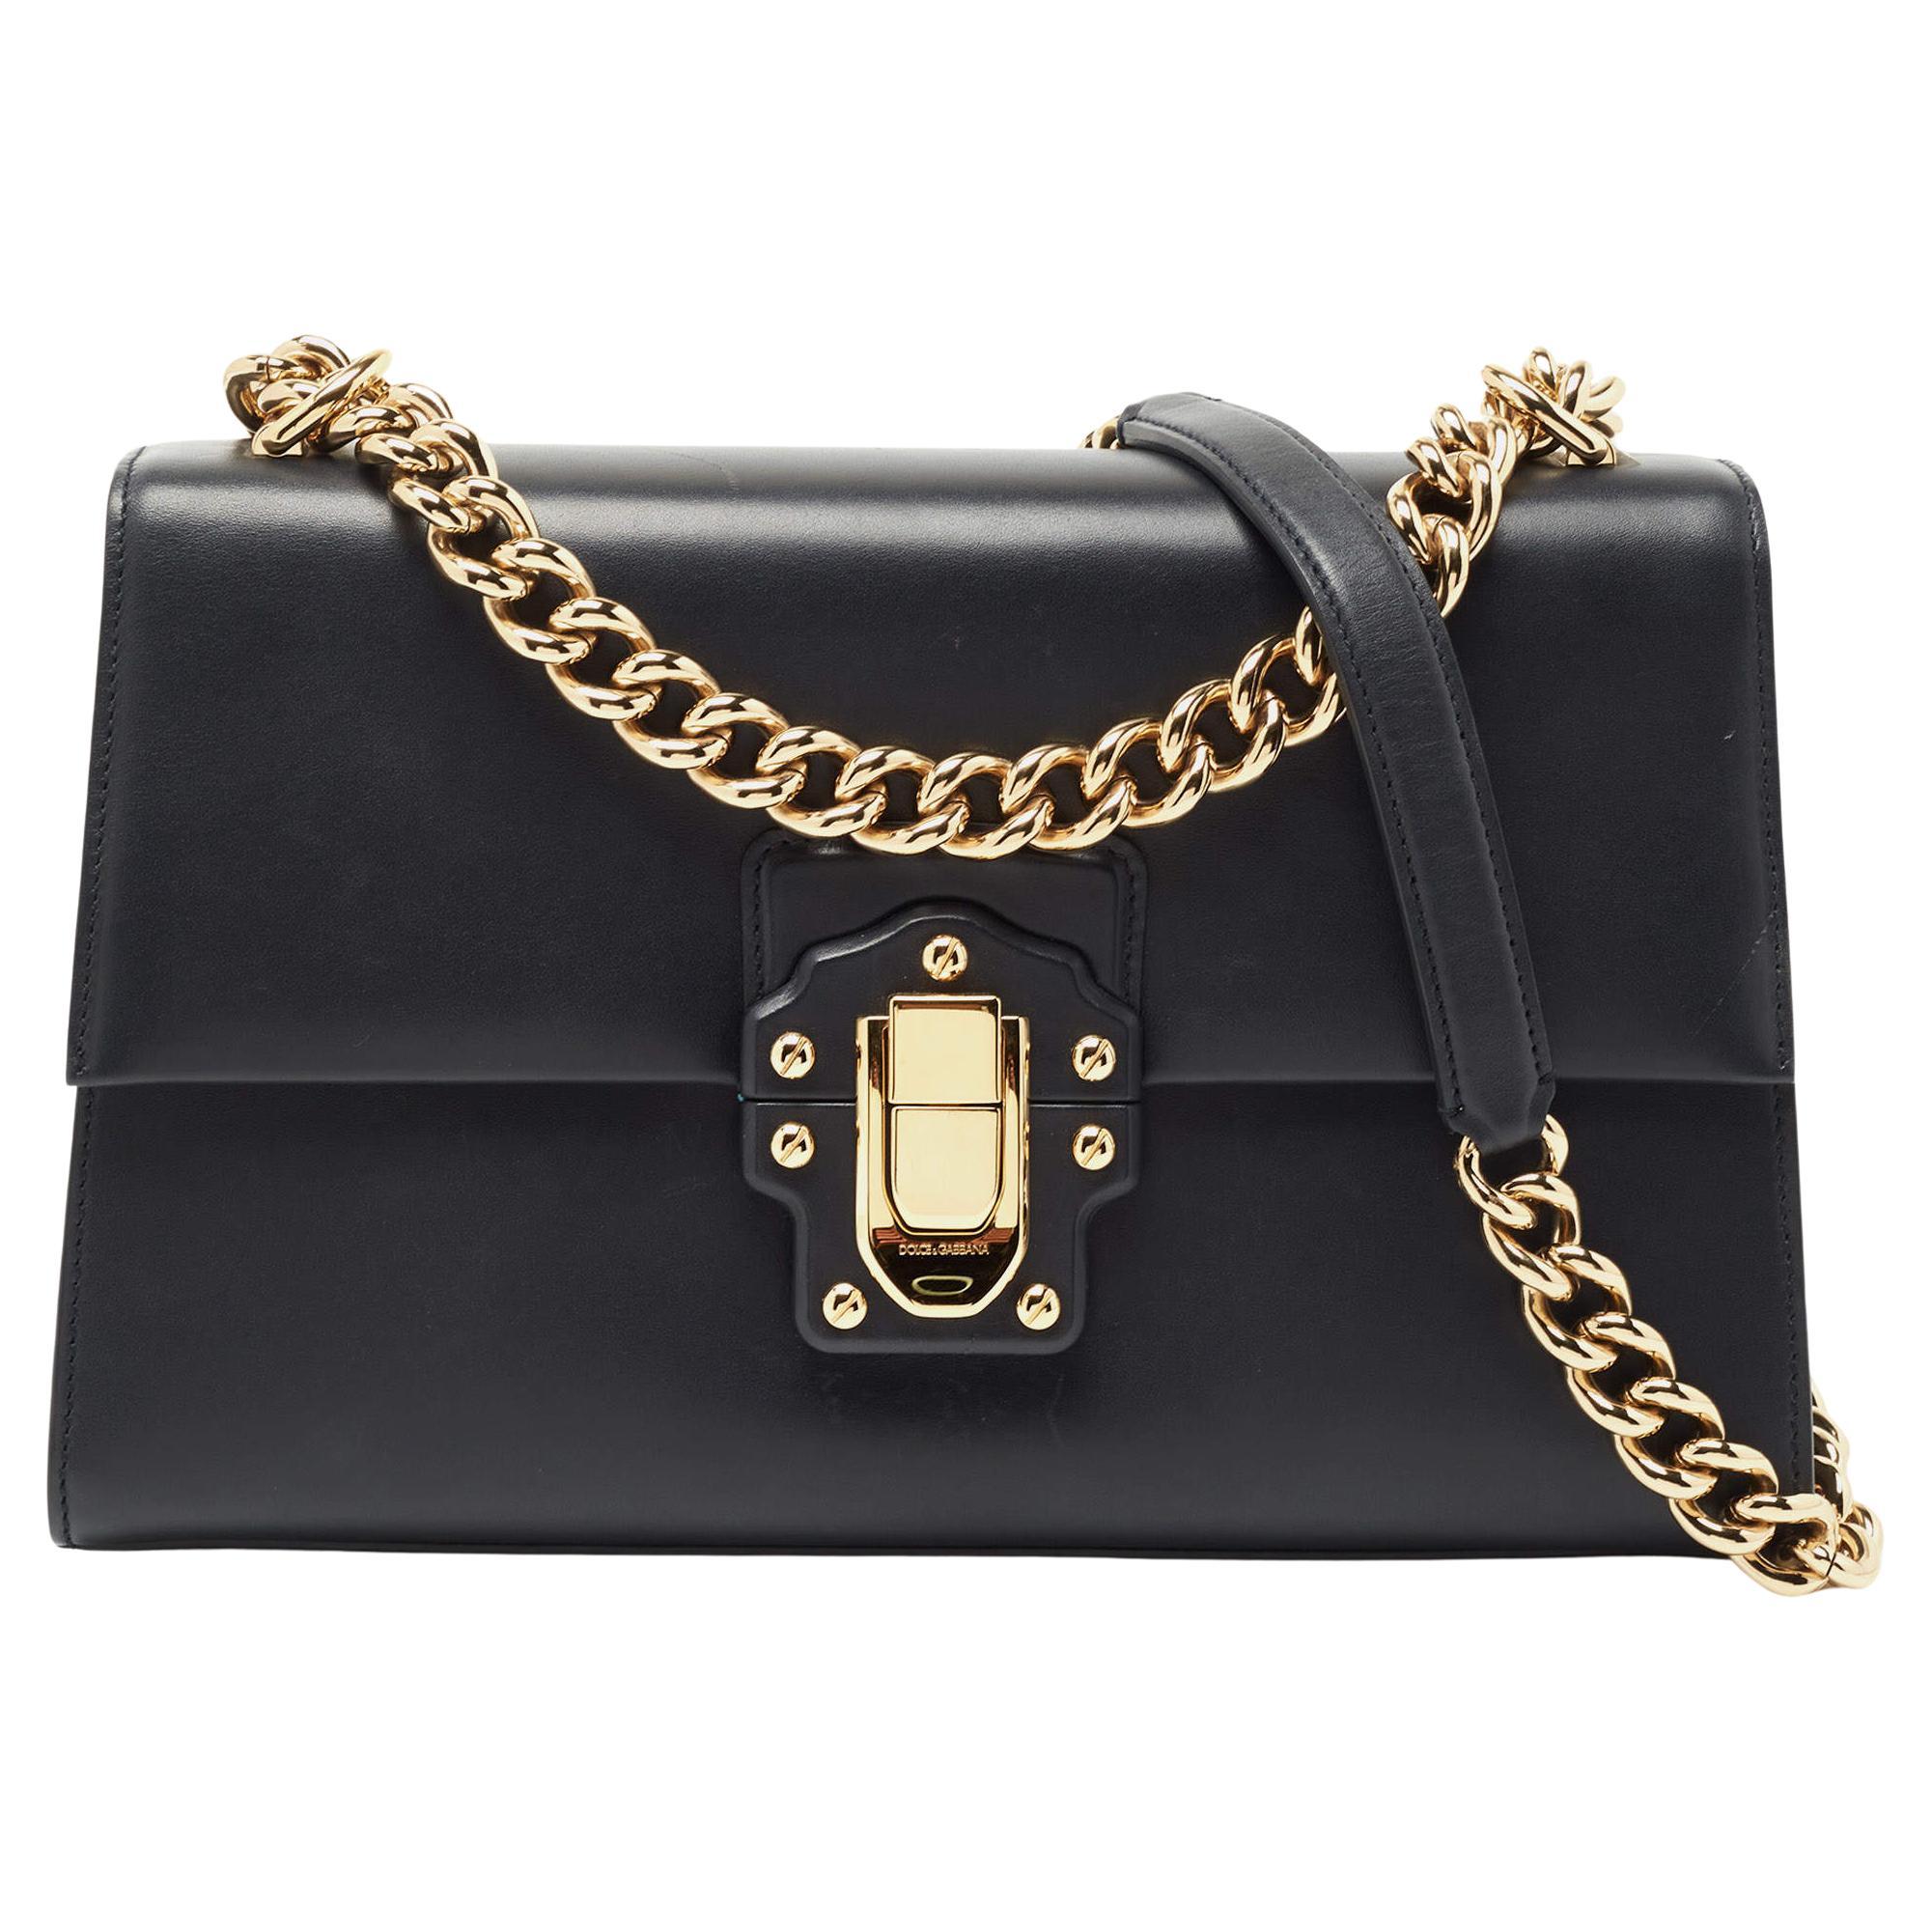 Dolce & Gabbana Navy Blue Leather Large Lucia Shoulder Bag